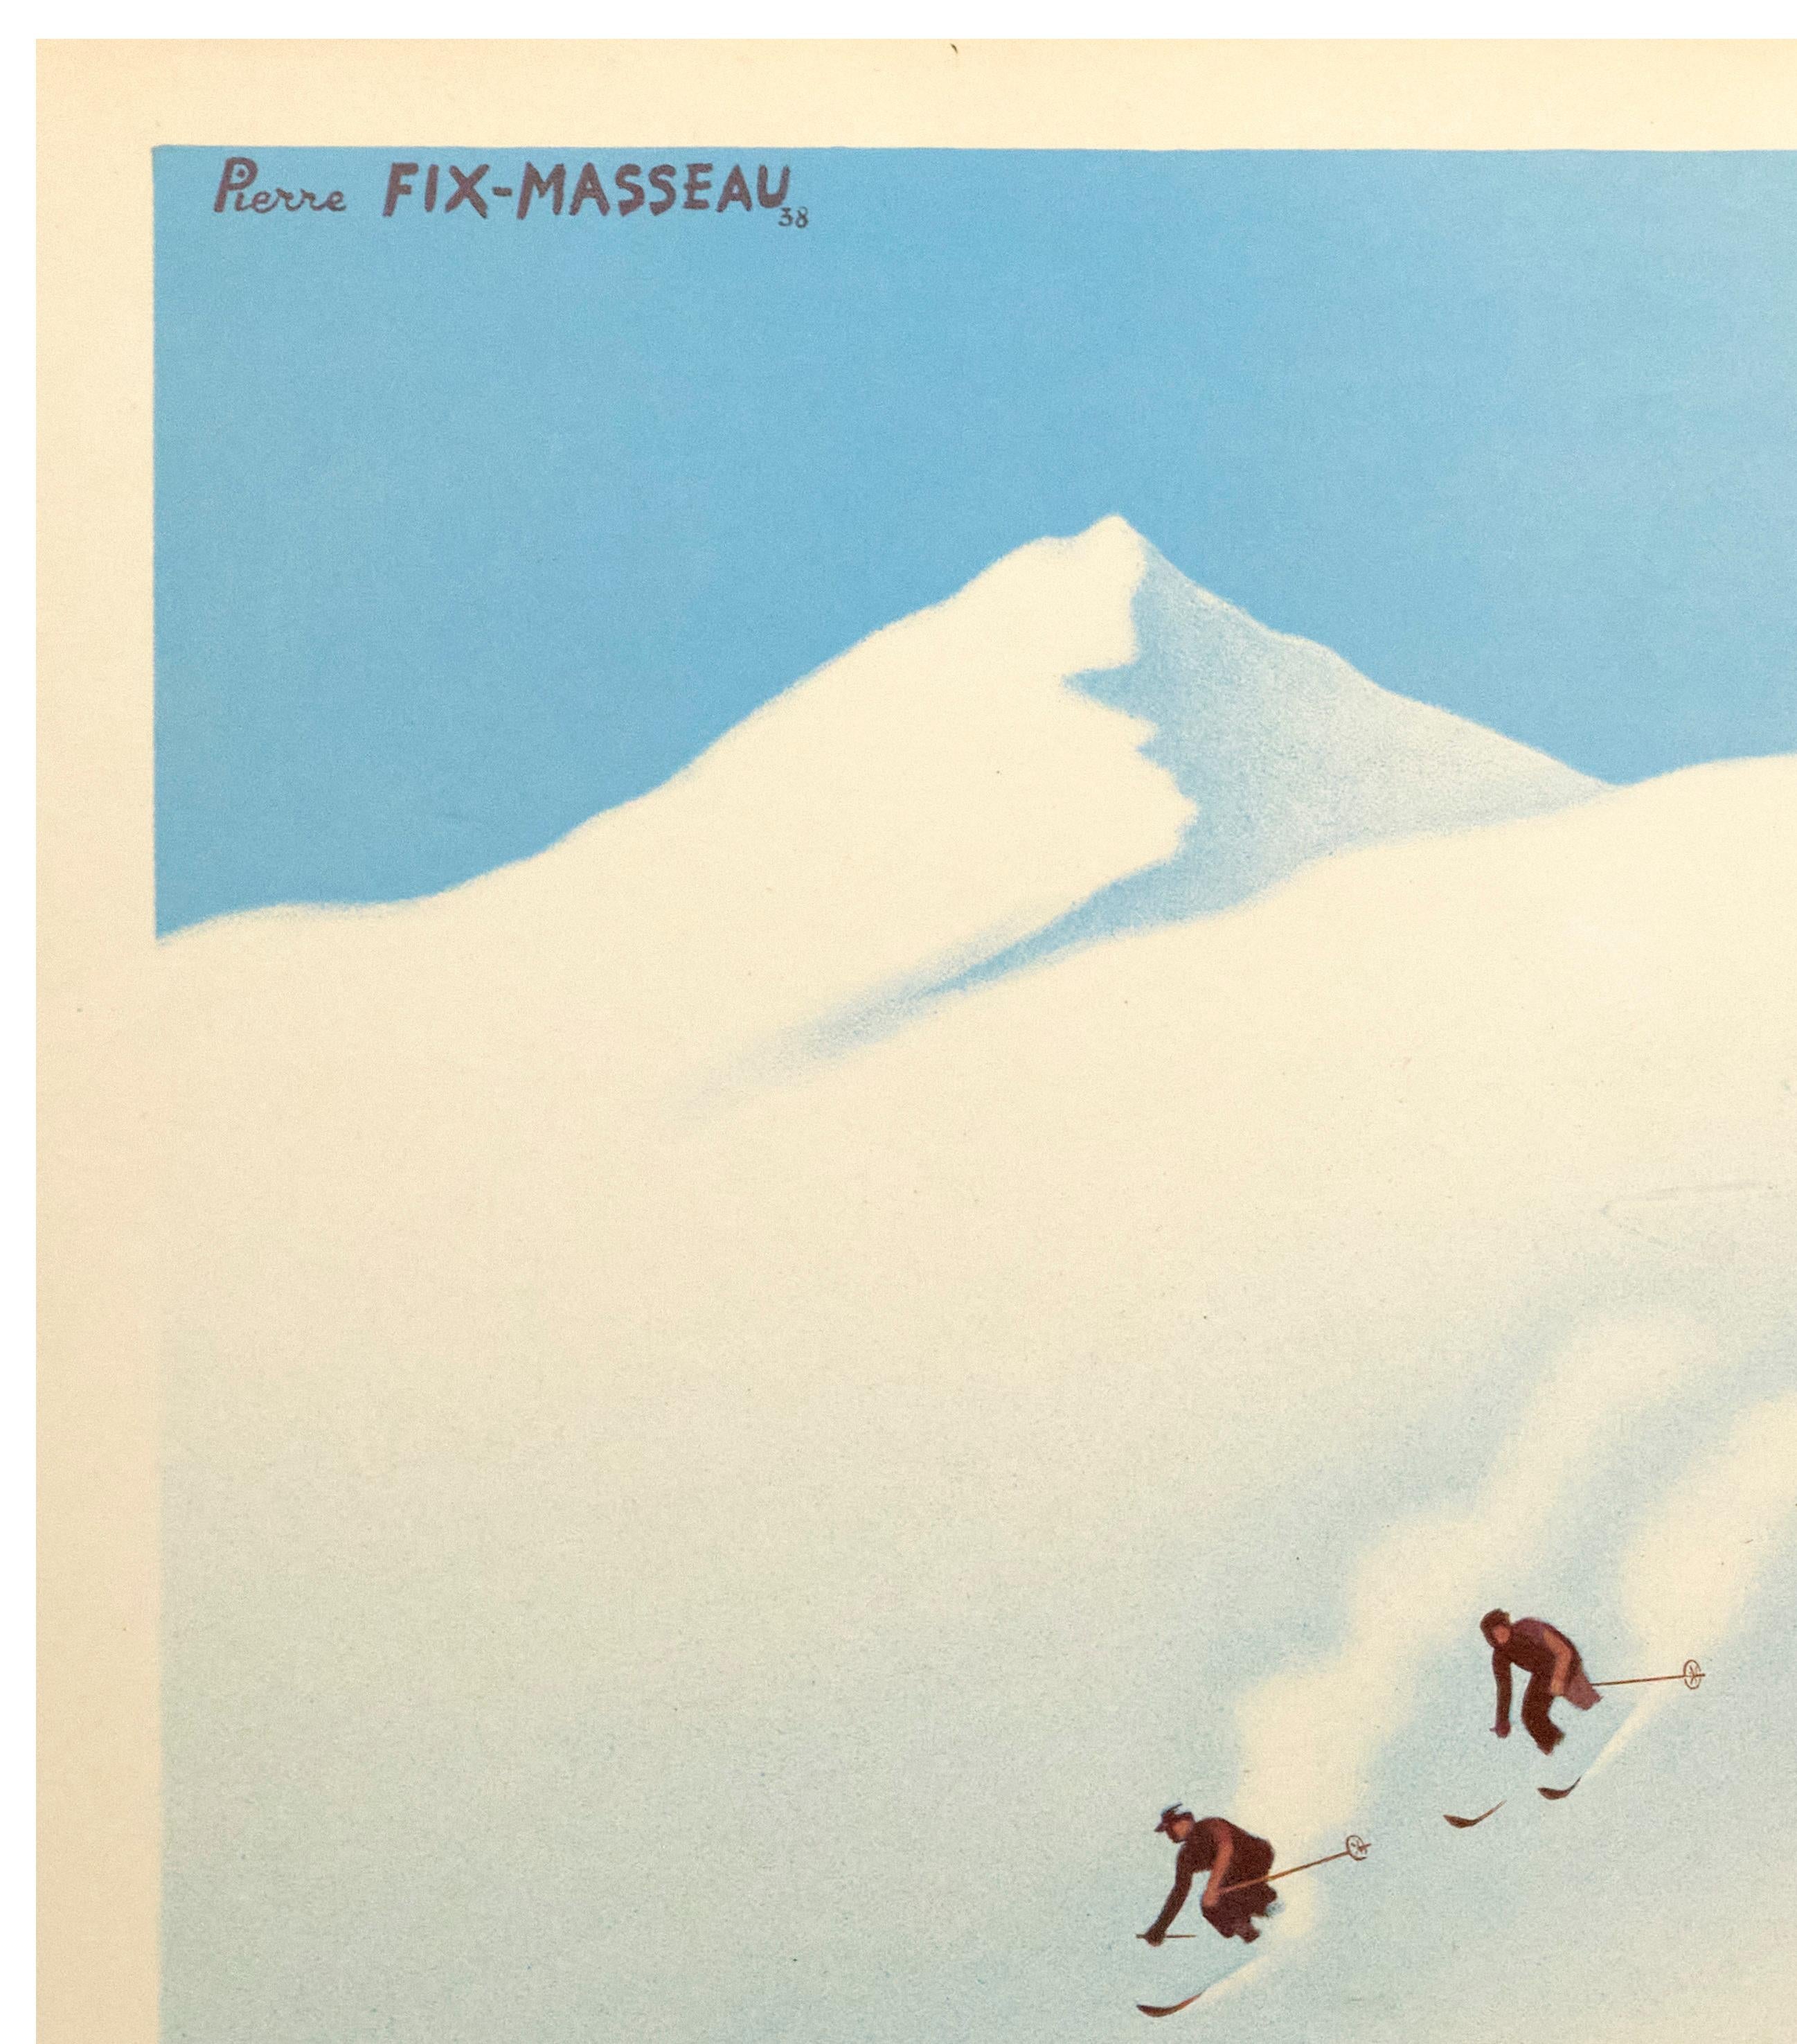 Affiche de la Société Nationale des Chemins de Fer Français (SNCF) réalisée par Pierre Fix-Masseau en 1938 pour promouvoir le tourisme hivernal vers les destinations montagneuses en France.

Artistics : Fix-Masseau Pierre (1905-1994)
Titre : Bon